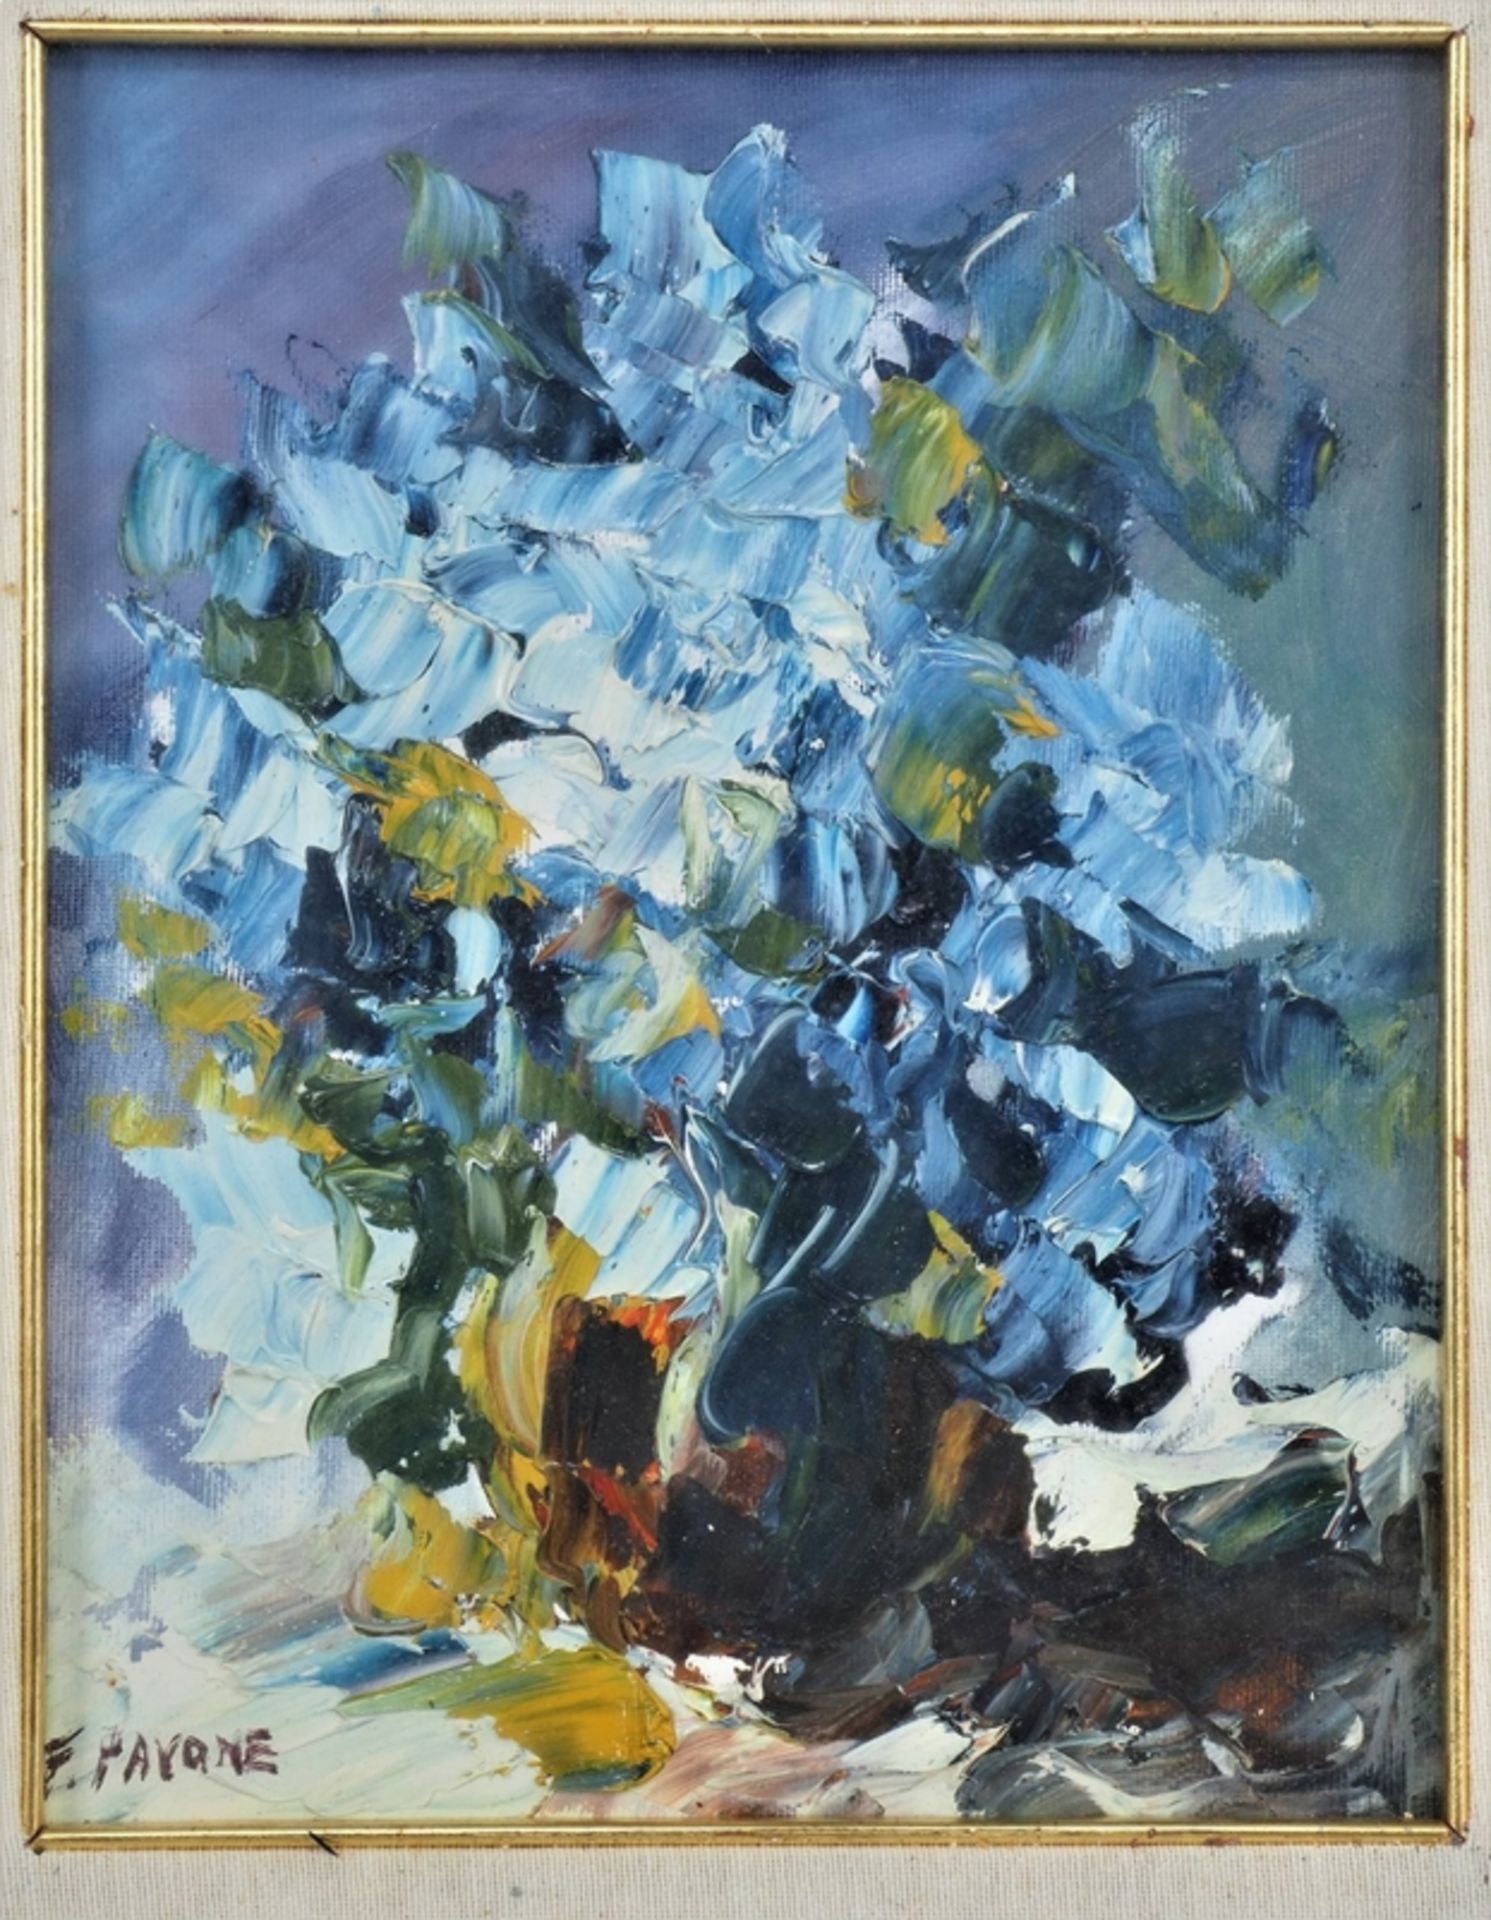 Franco Pavone (*1945, Messina) - Abstrahiertes Blumenstillleben, 1982